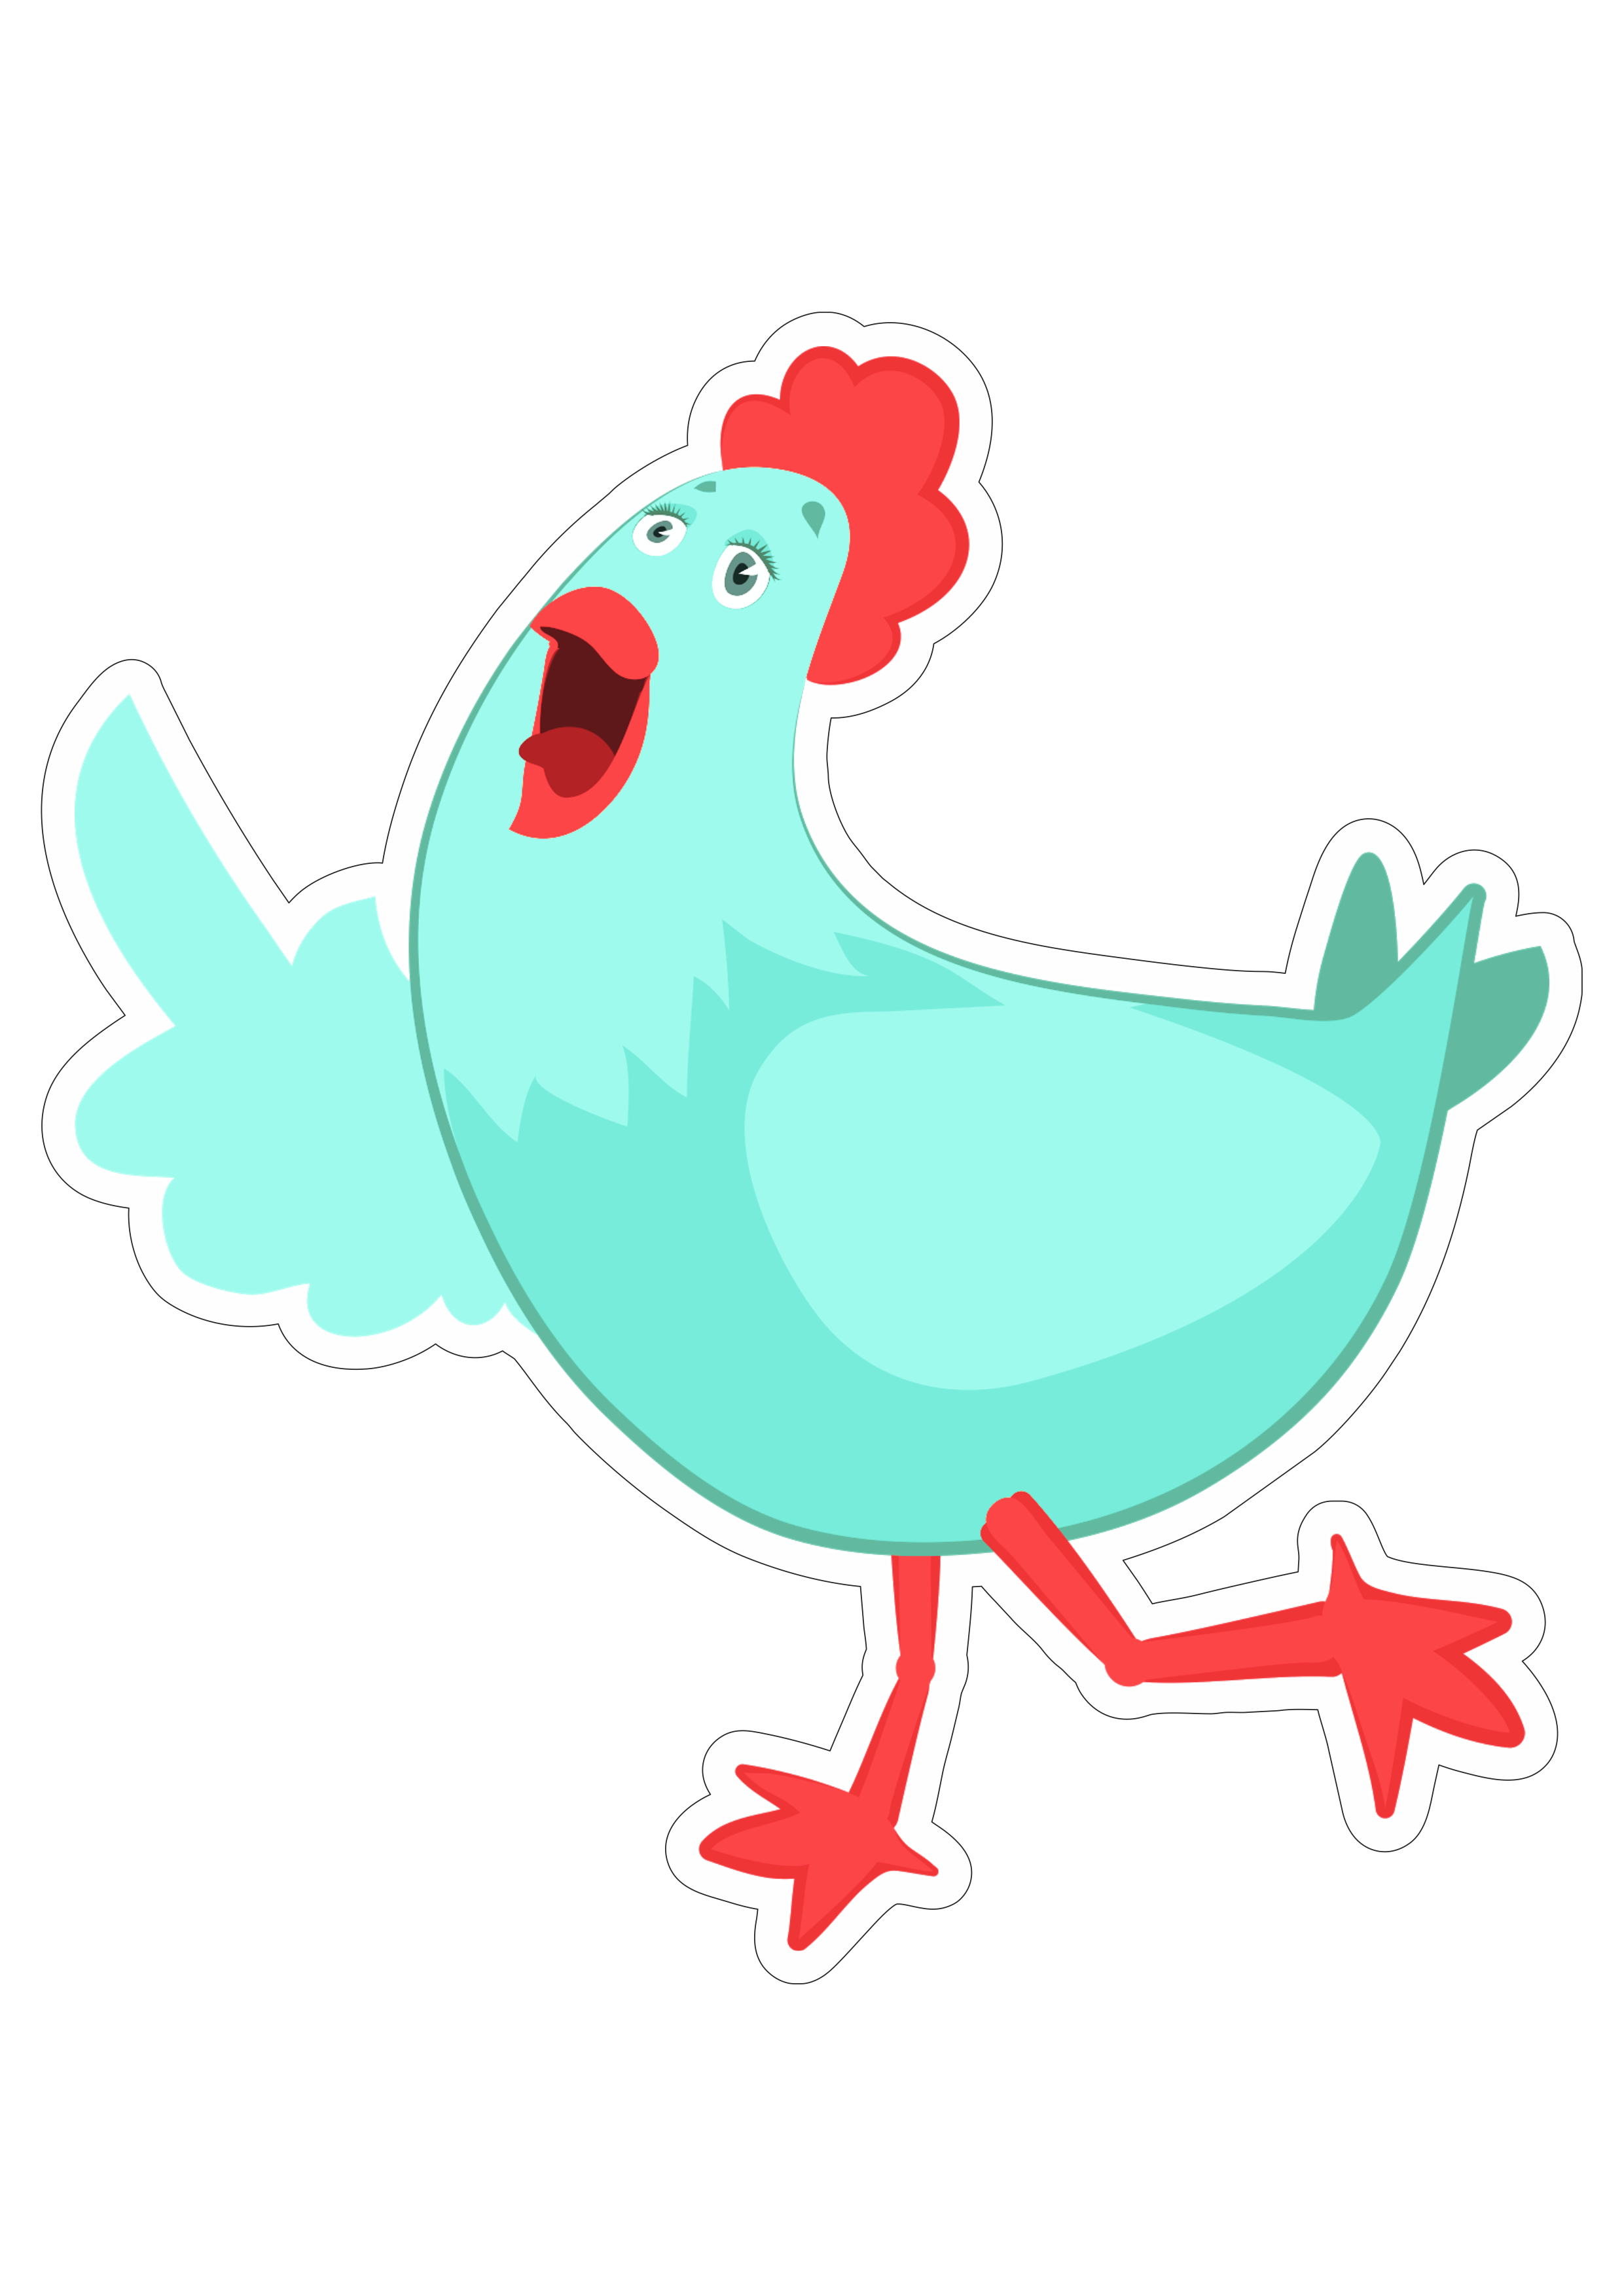 Mundo bita galinha azul desenho infantil musical youtube fundo transparente com contorno png